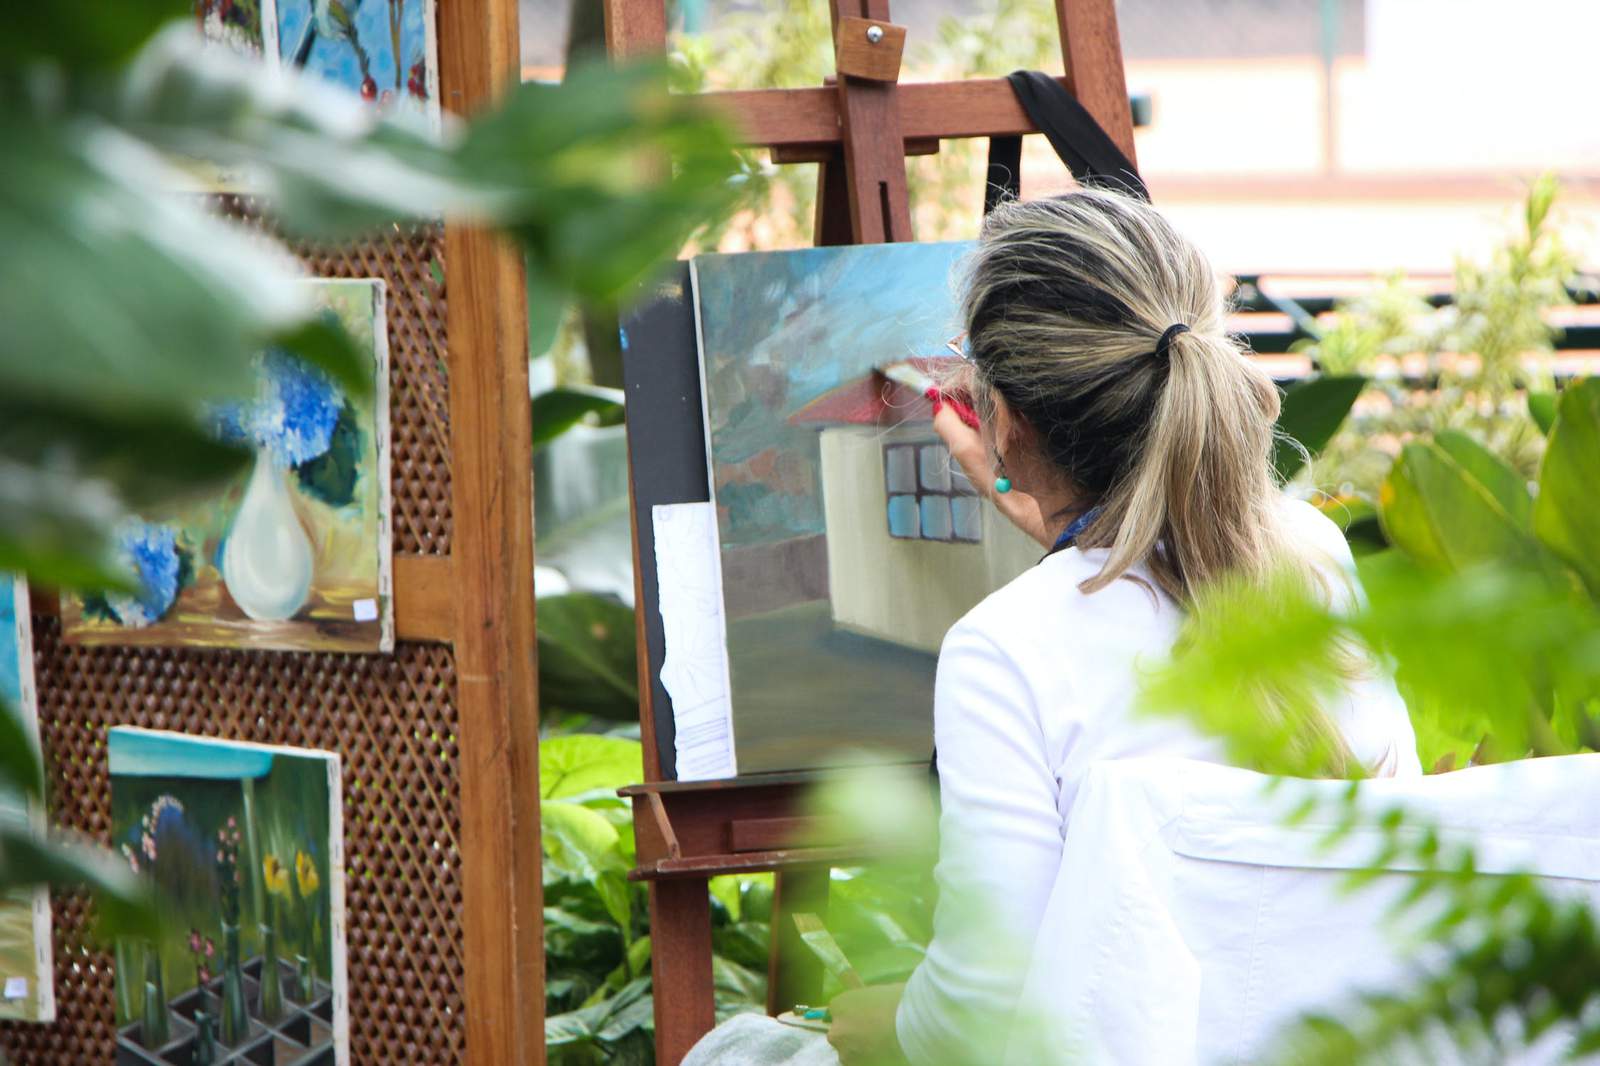 Matthaei Botanical Gardens seeks artists to exhibit work in Visitor Center